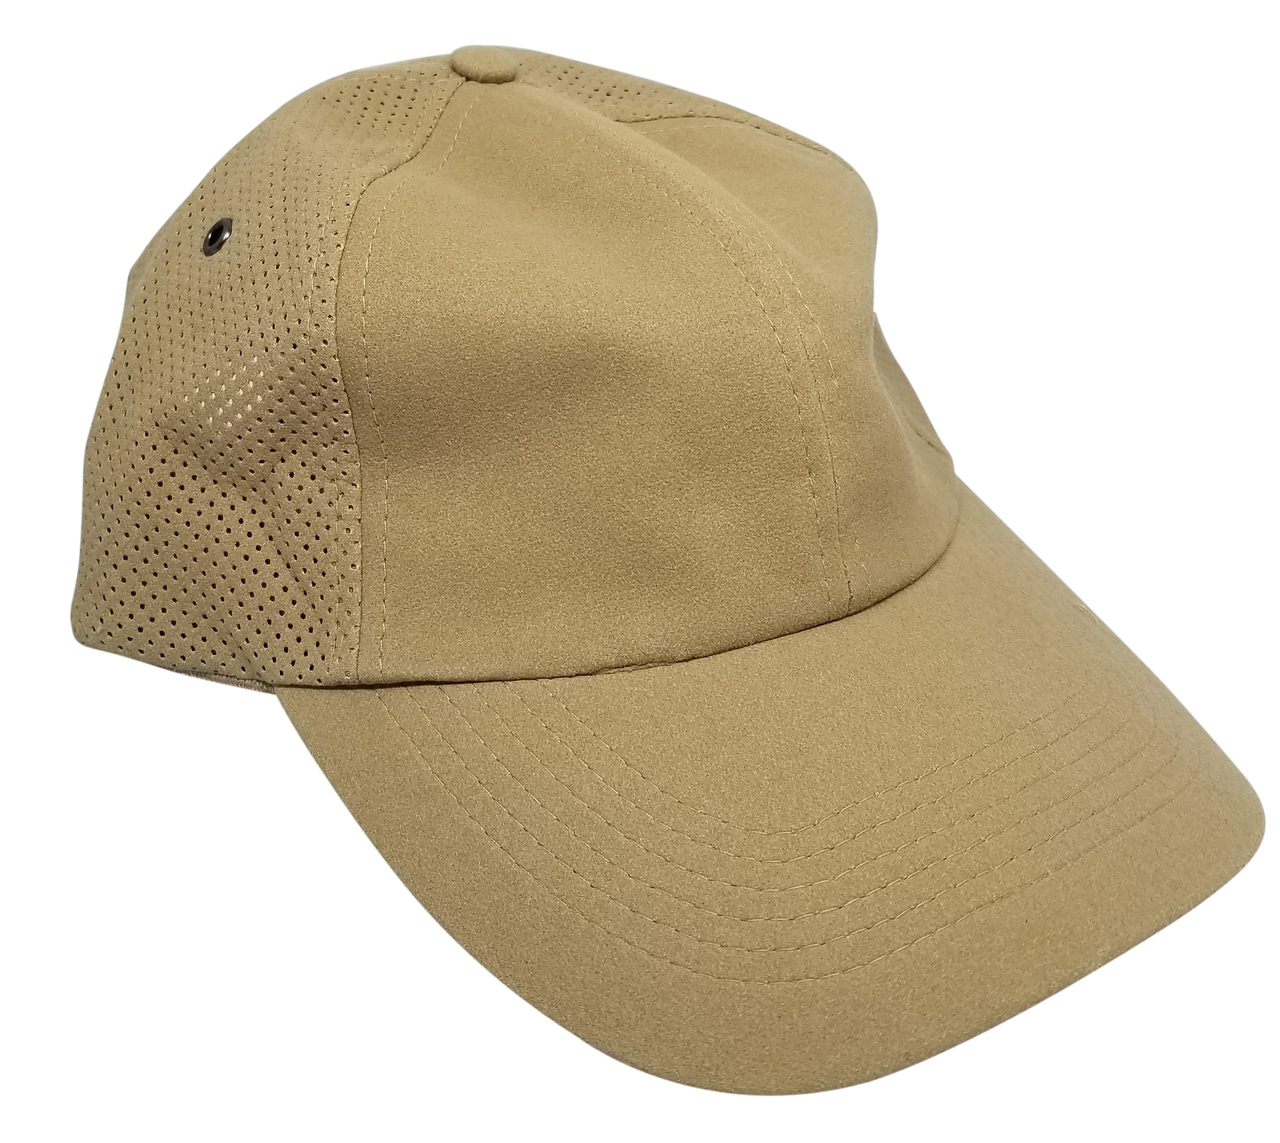 Aussie Chiller Outback Bushie Chiller Golf Hat - Pearl White - Medium